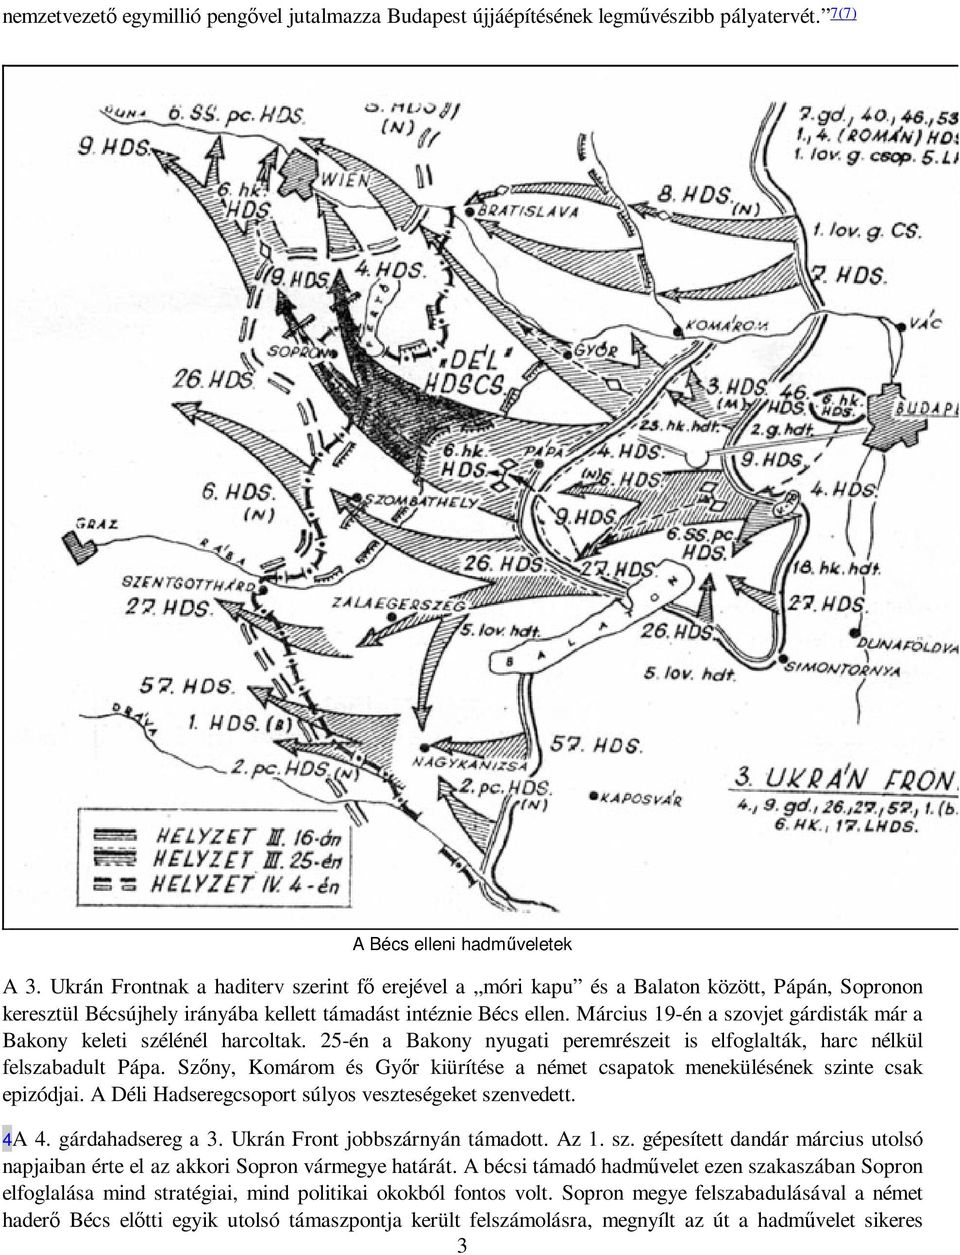 Március 19-én a szovjet gárdisták már a Bakony keleti szélénél harcoltak. 25-én a Bakony nyugati peremrészeit is elfoglalták, harc nélkül felszabadult Pápa.